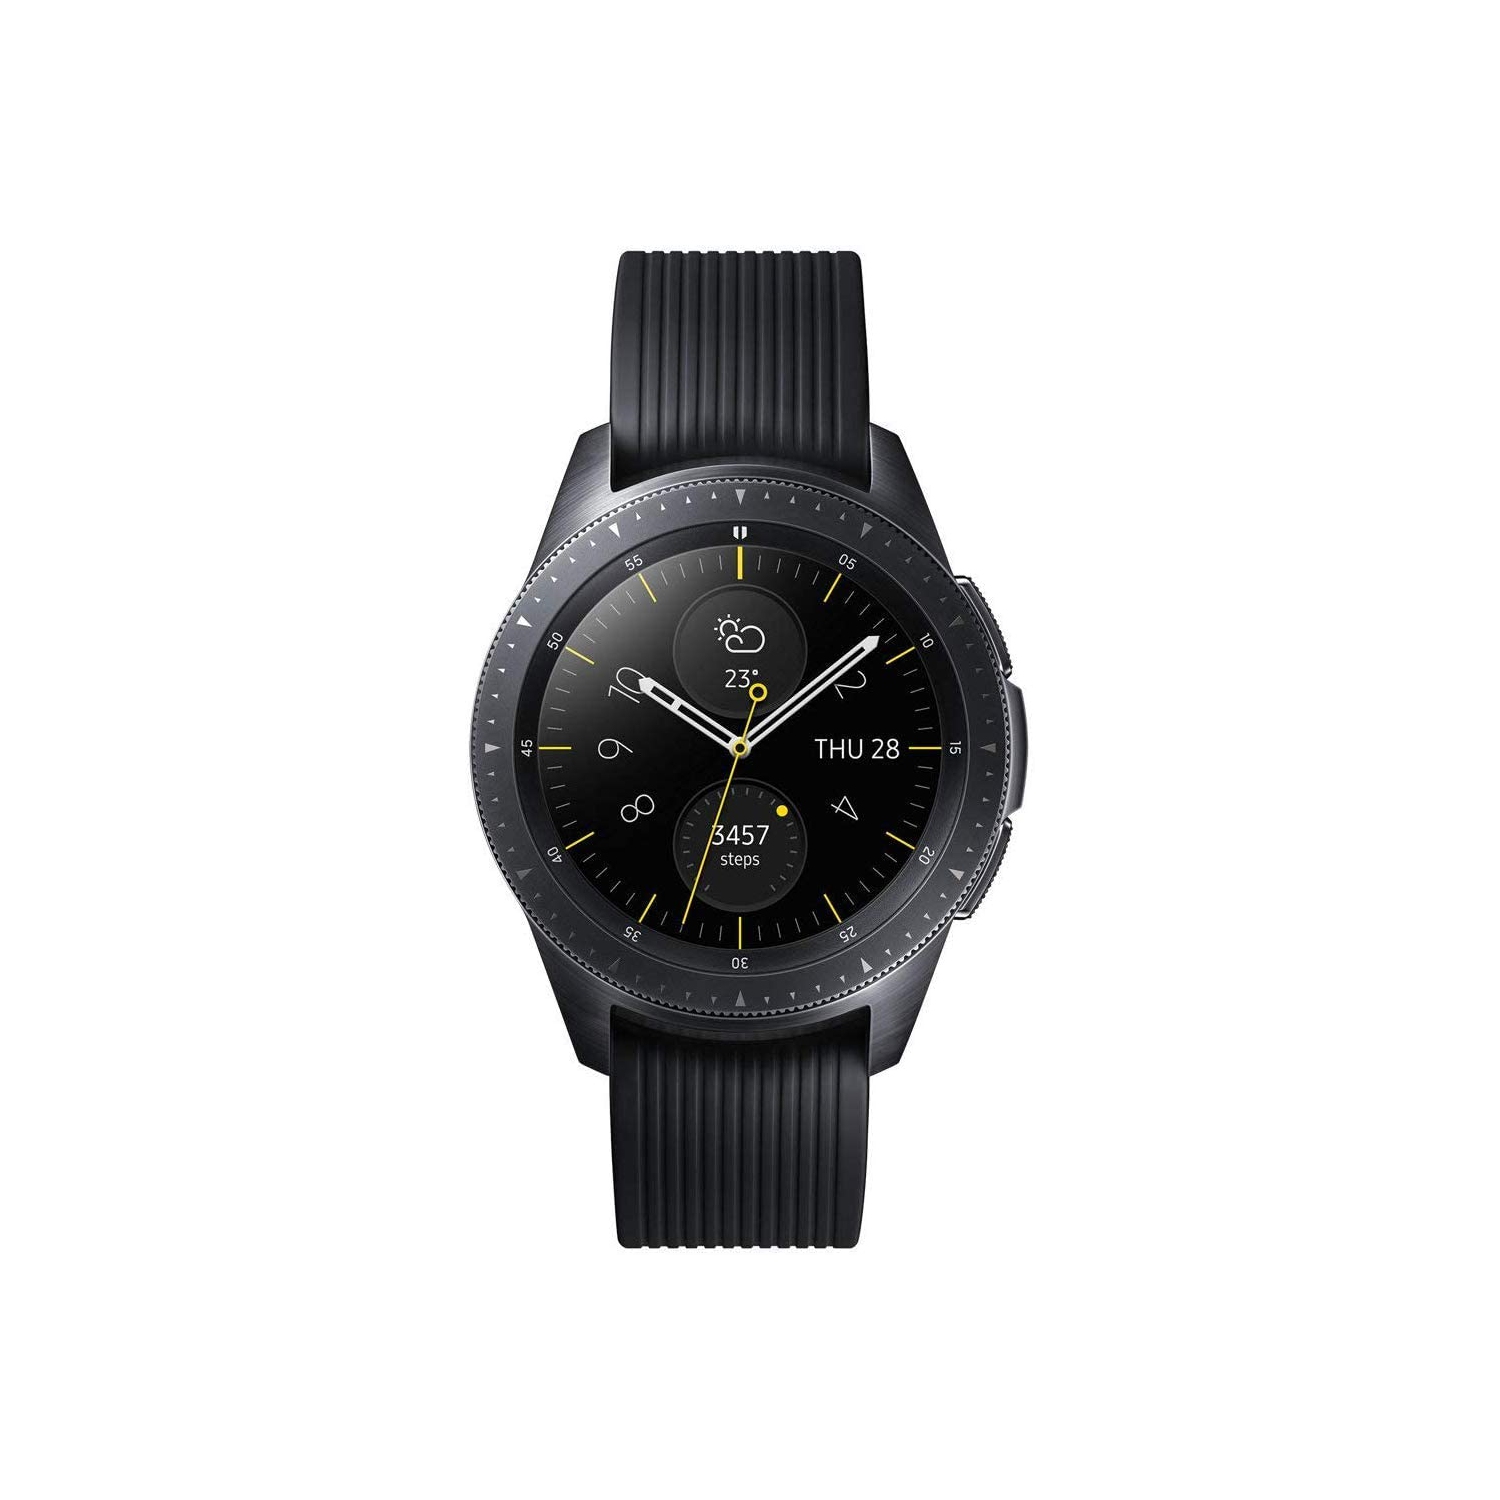 Samsung Galaxy Watch (42mm, Bluetooth) - SM-R815W - Black - Open Box